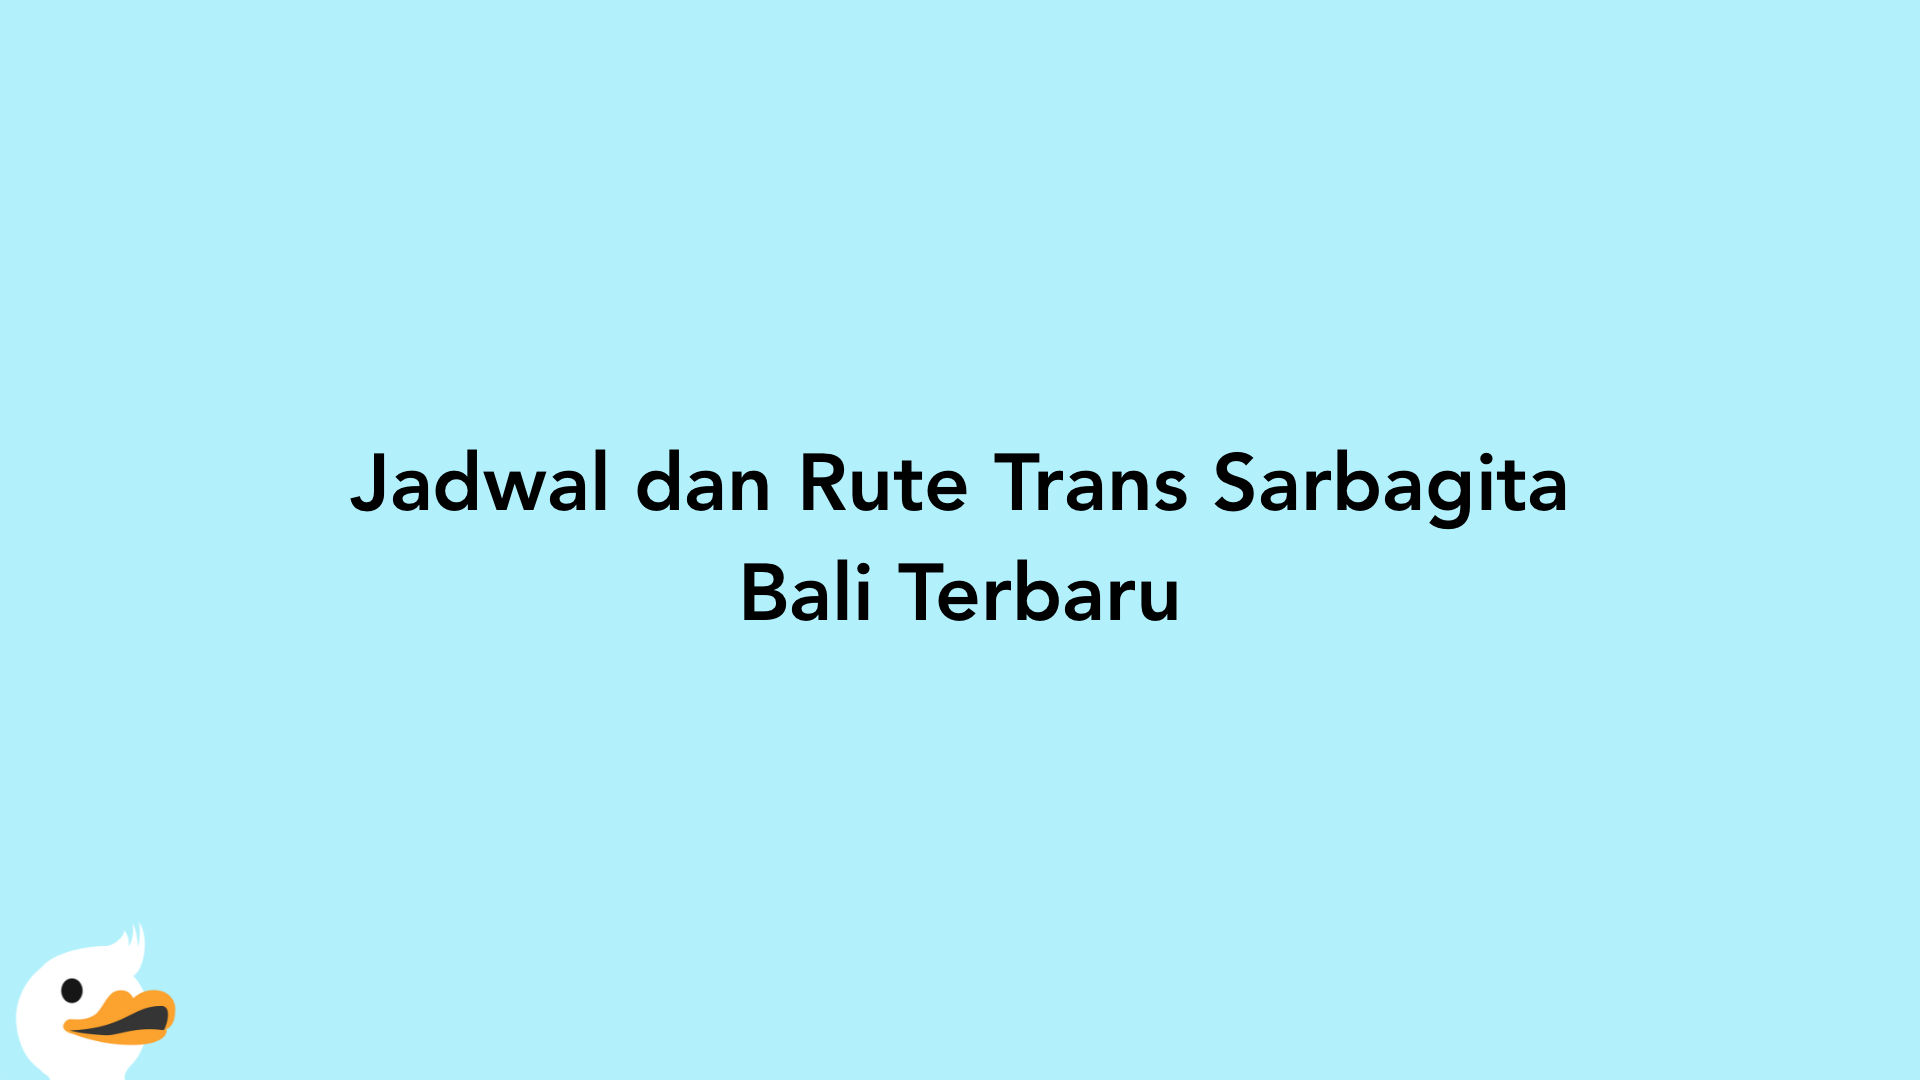 Jadwal dan Rute Trans Sarbagita Bali Terbaru